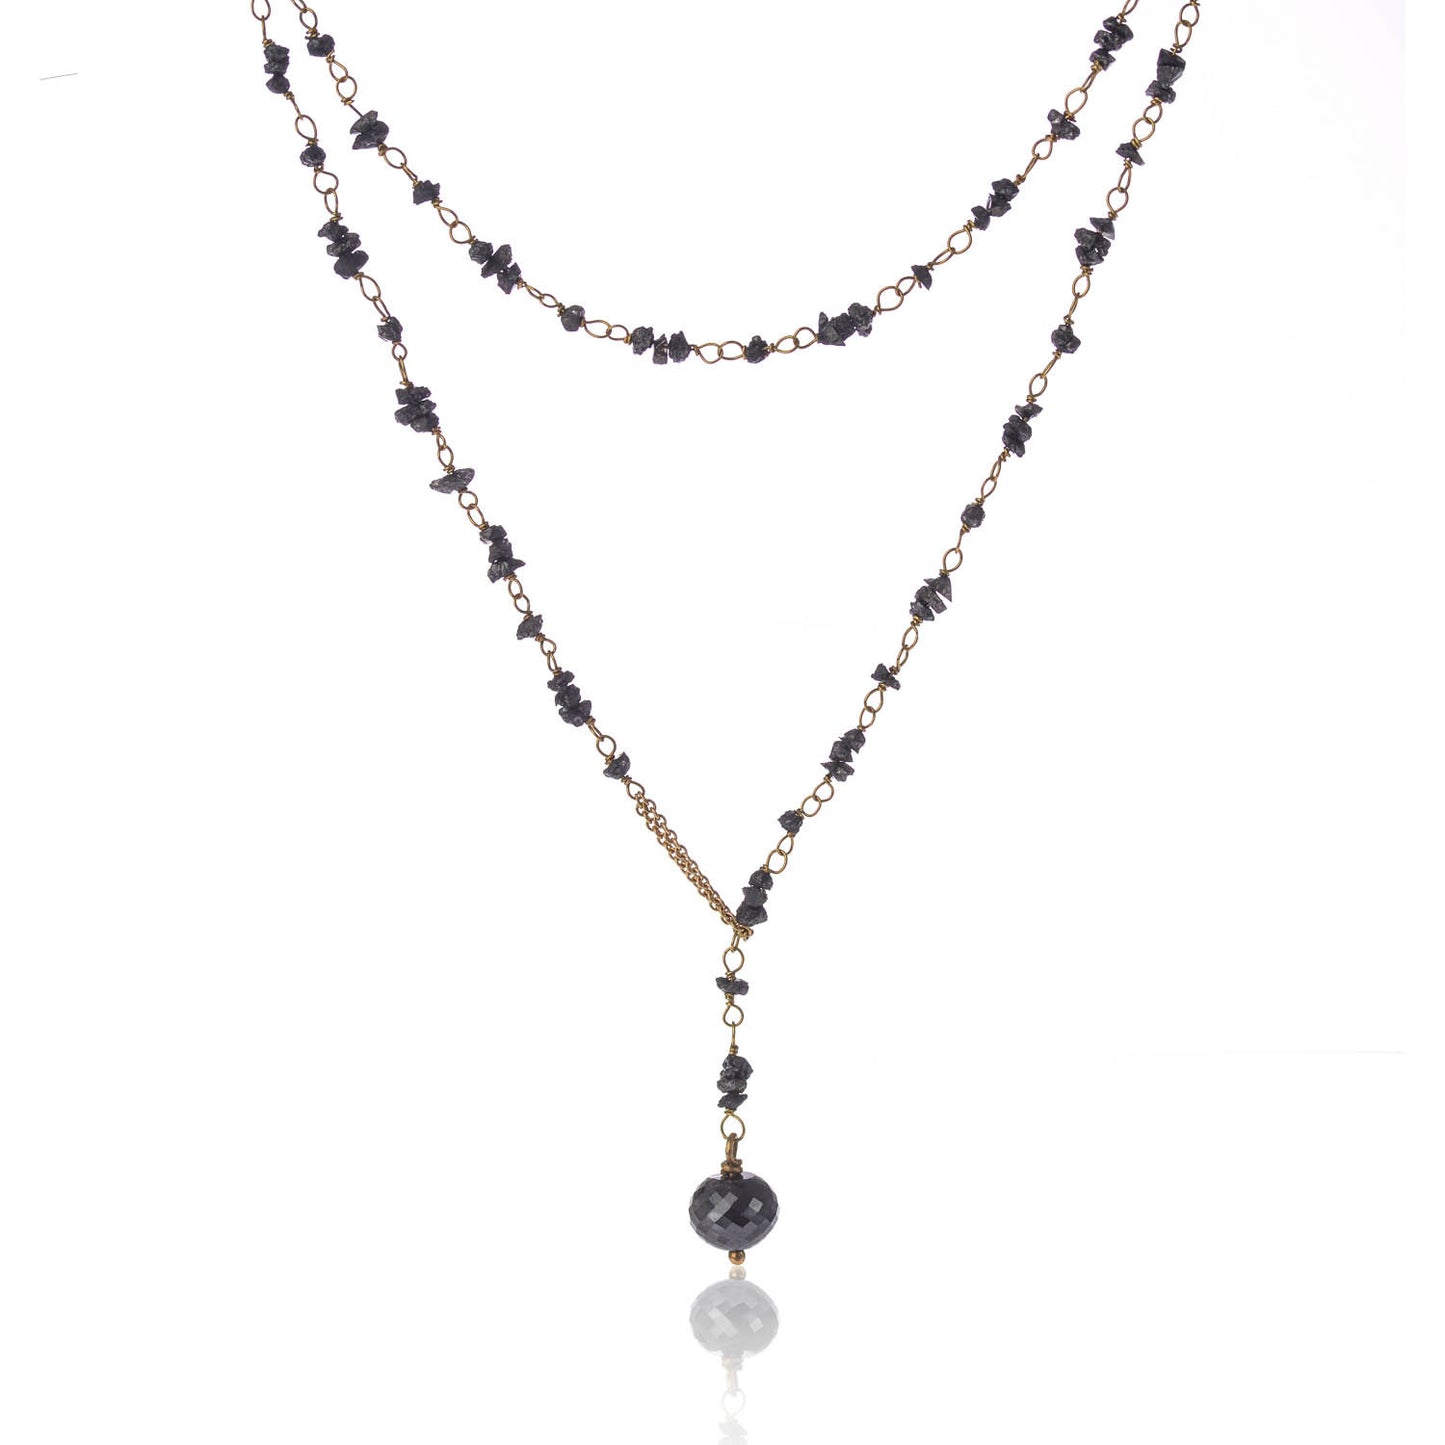 Raw Black Diamond Necklace by McFarlane Fine Jewellery